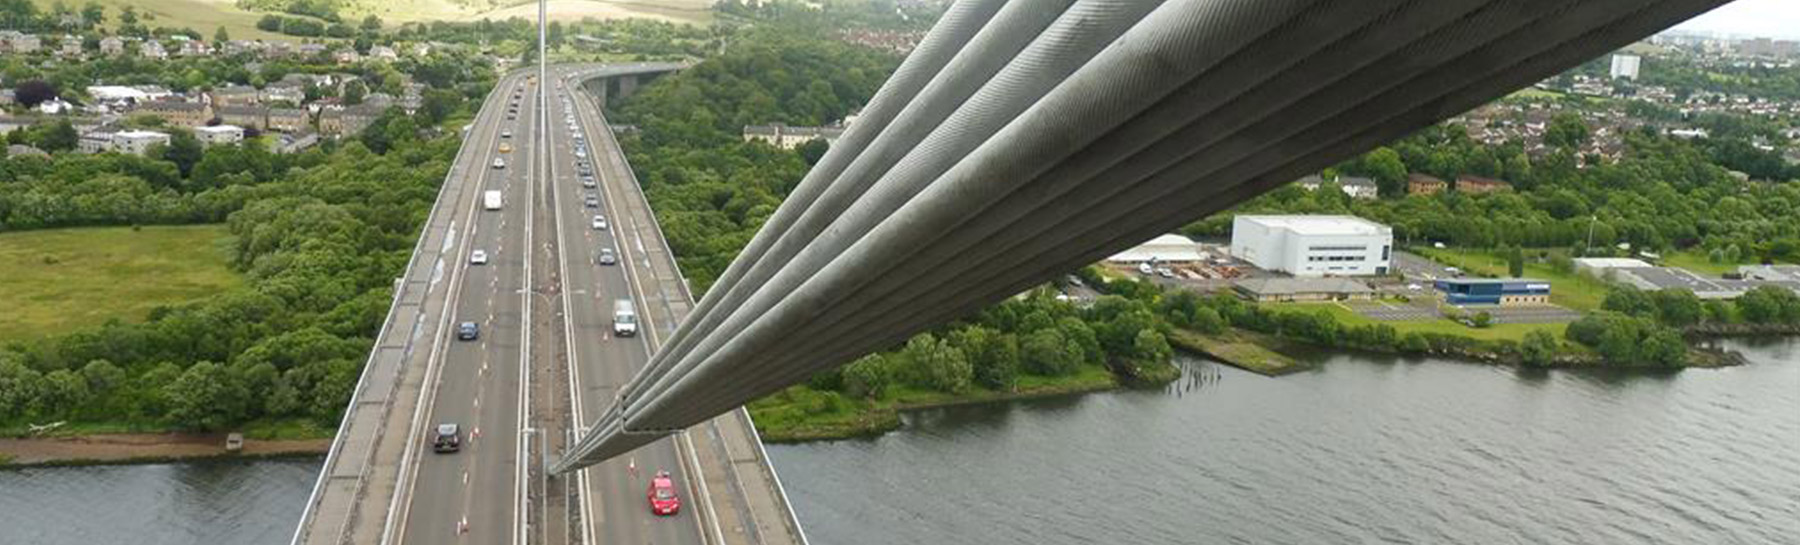 aerial view from top of erskine bridge or road bridge below